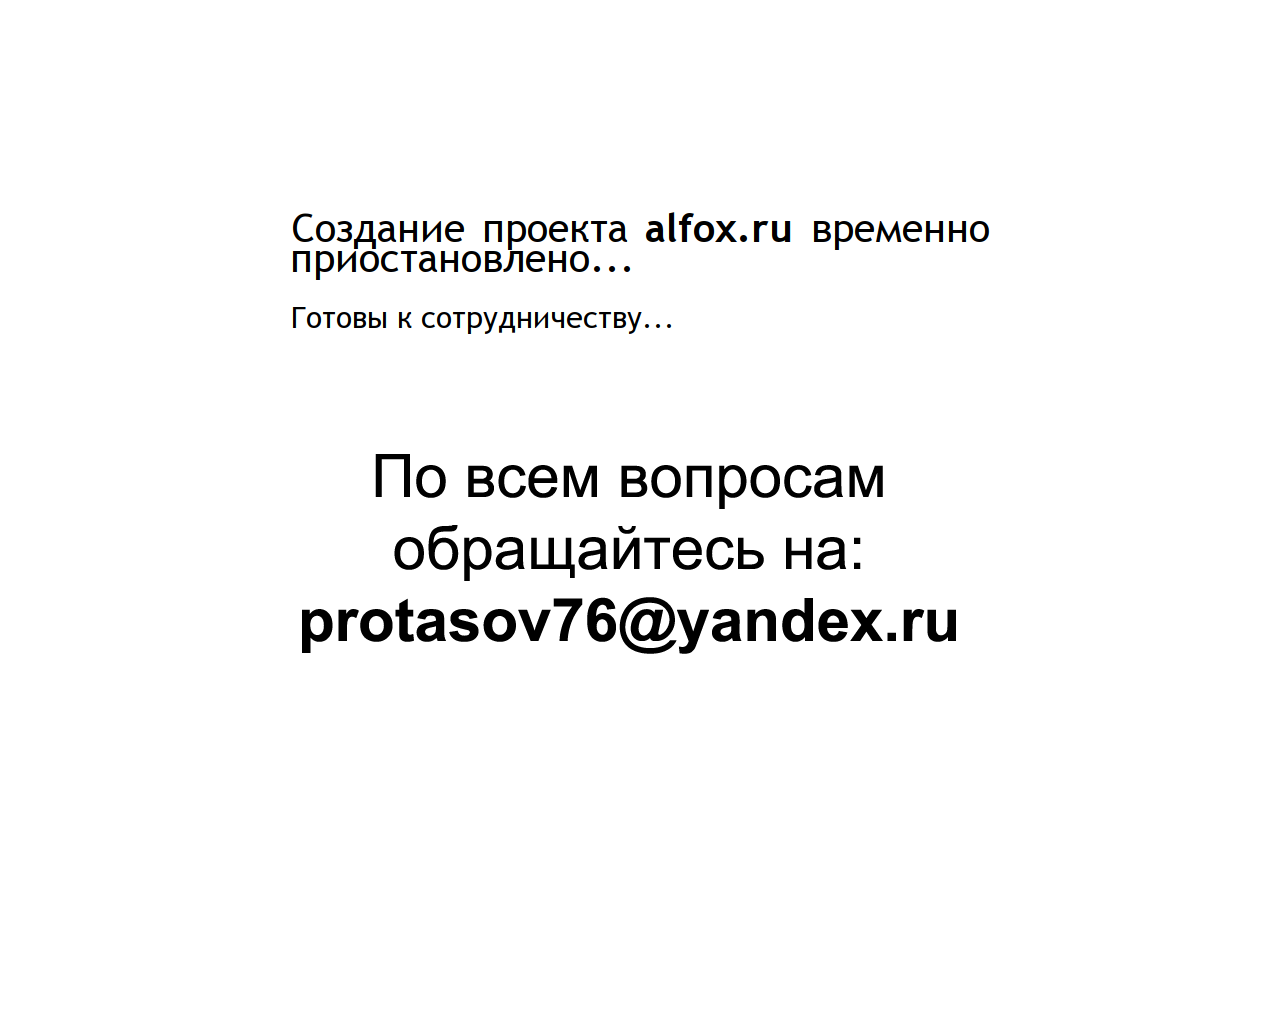 Изображение сайта alfox.ru в разрешении 1280x1024